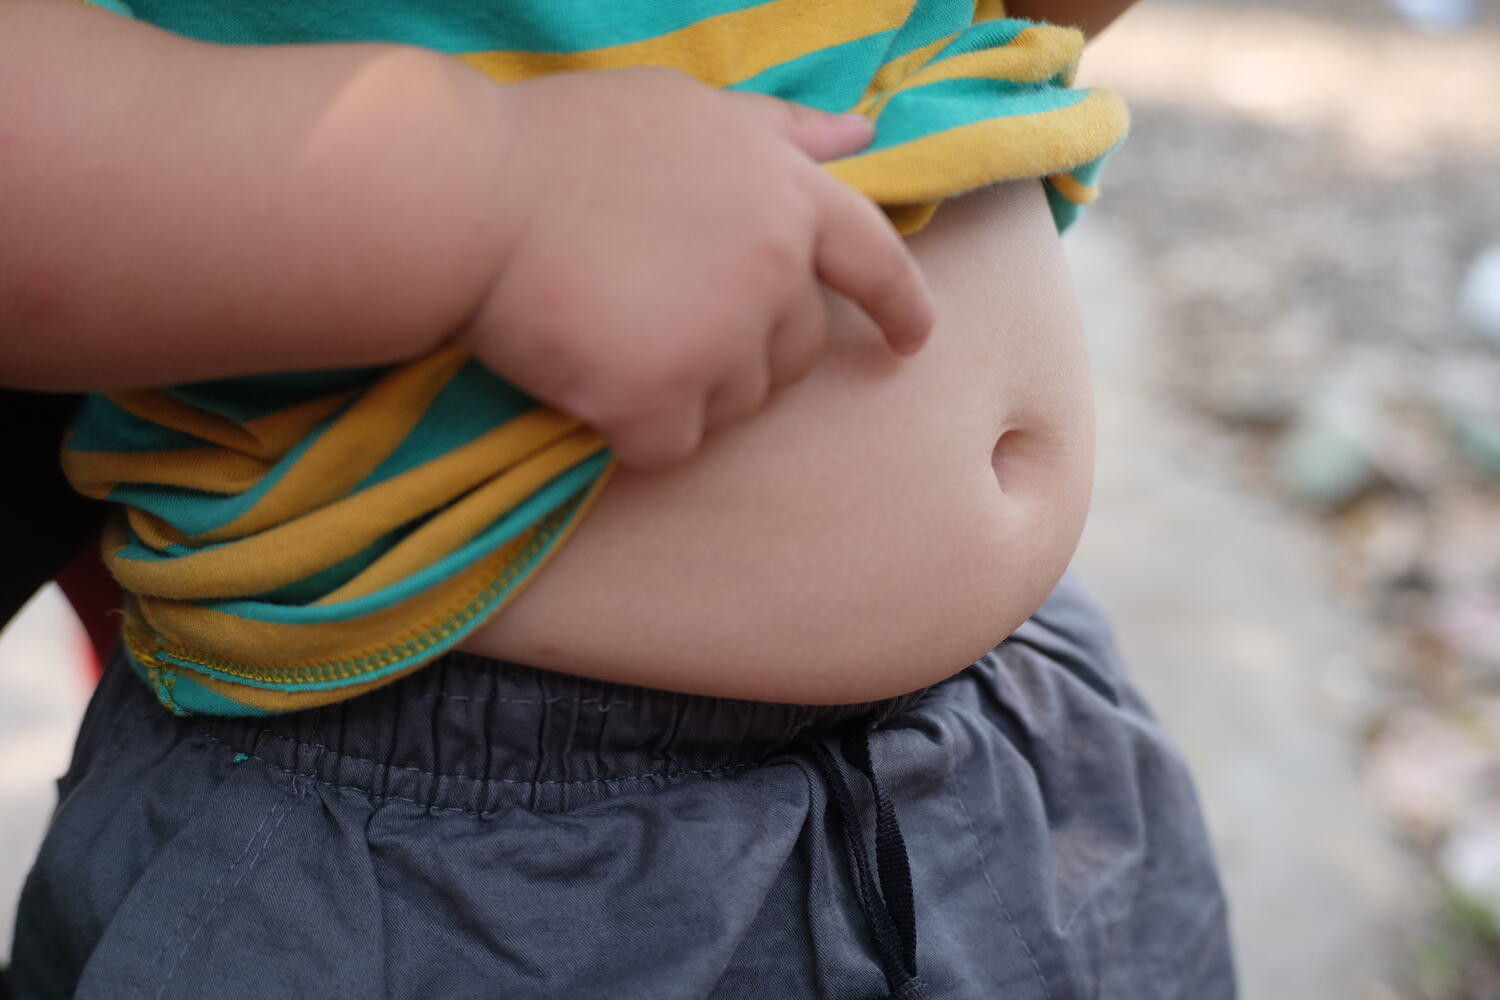 An overweight toddler